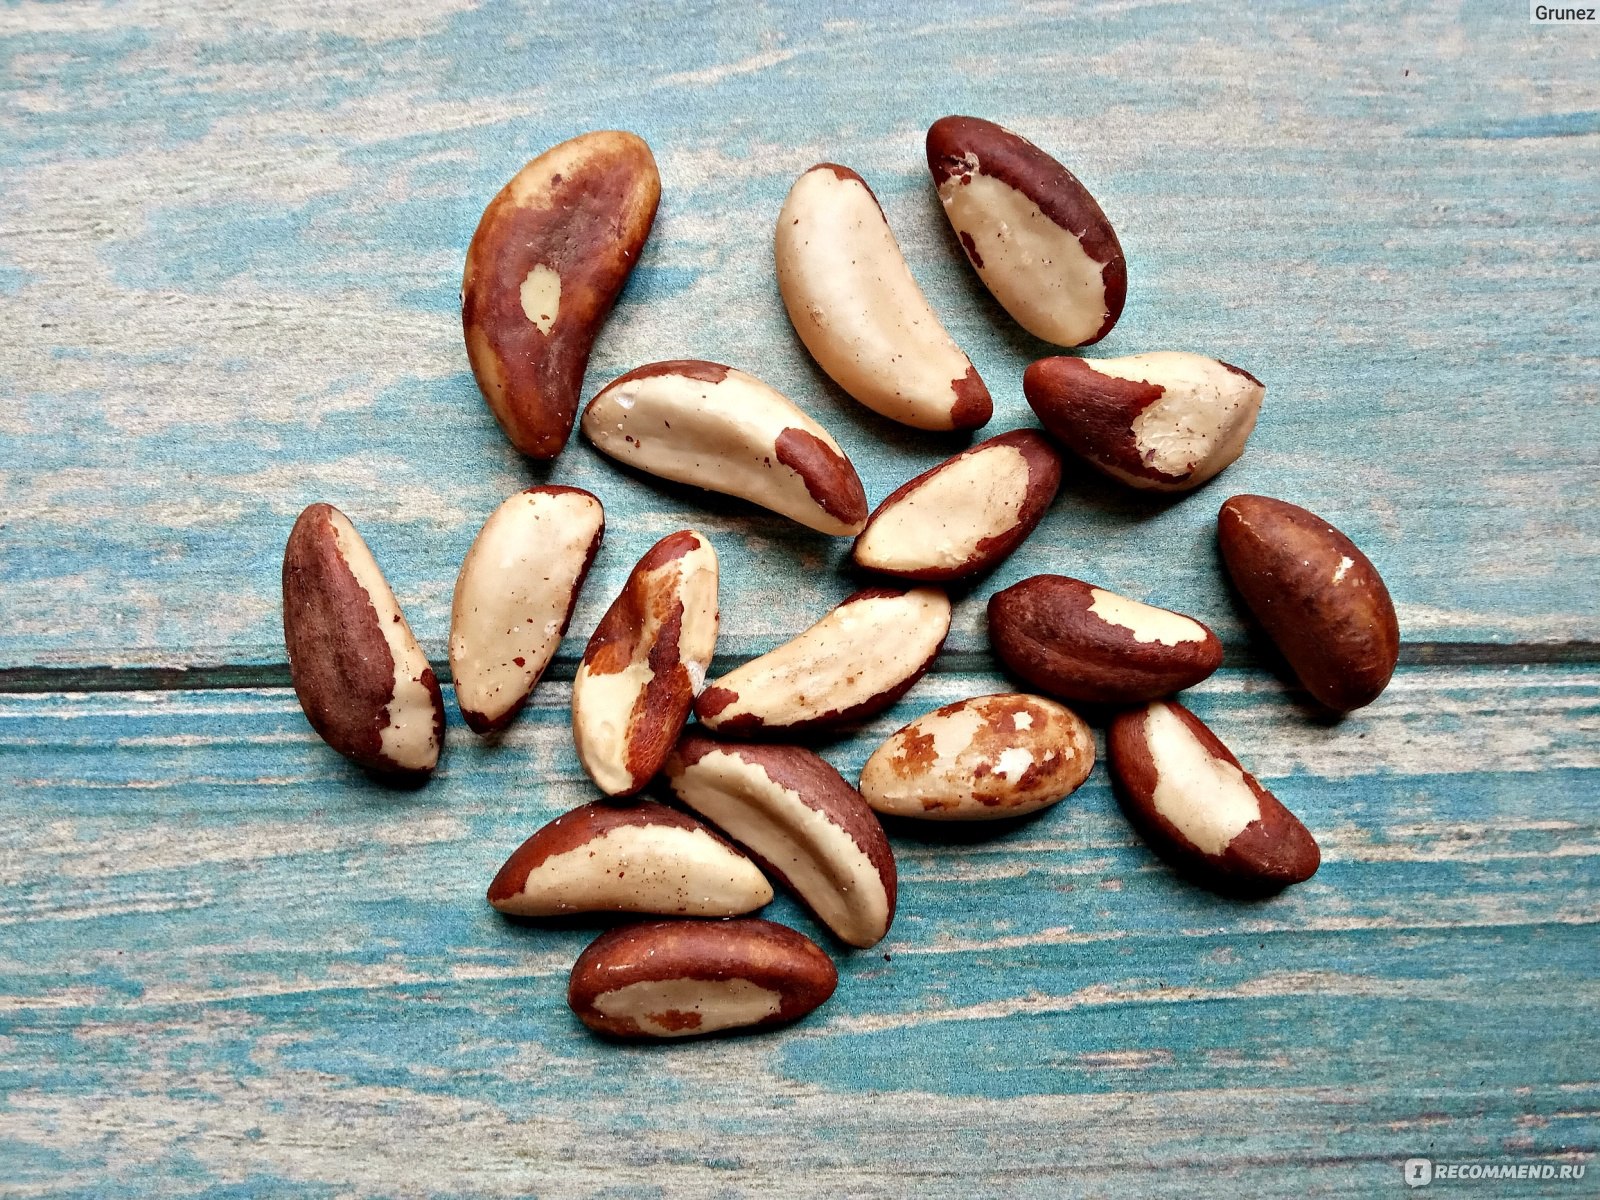 Почему посадить орех возле дома — крайне плохая идея